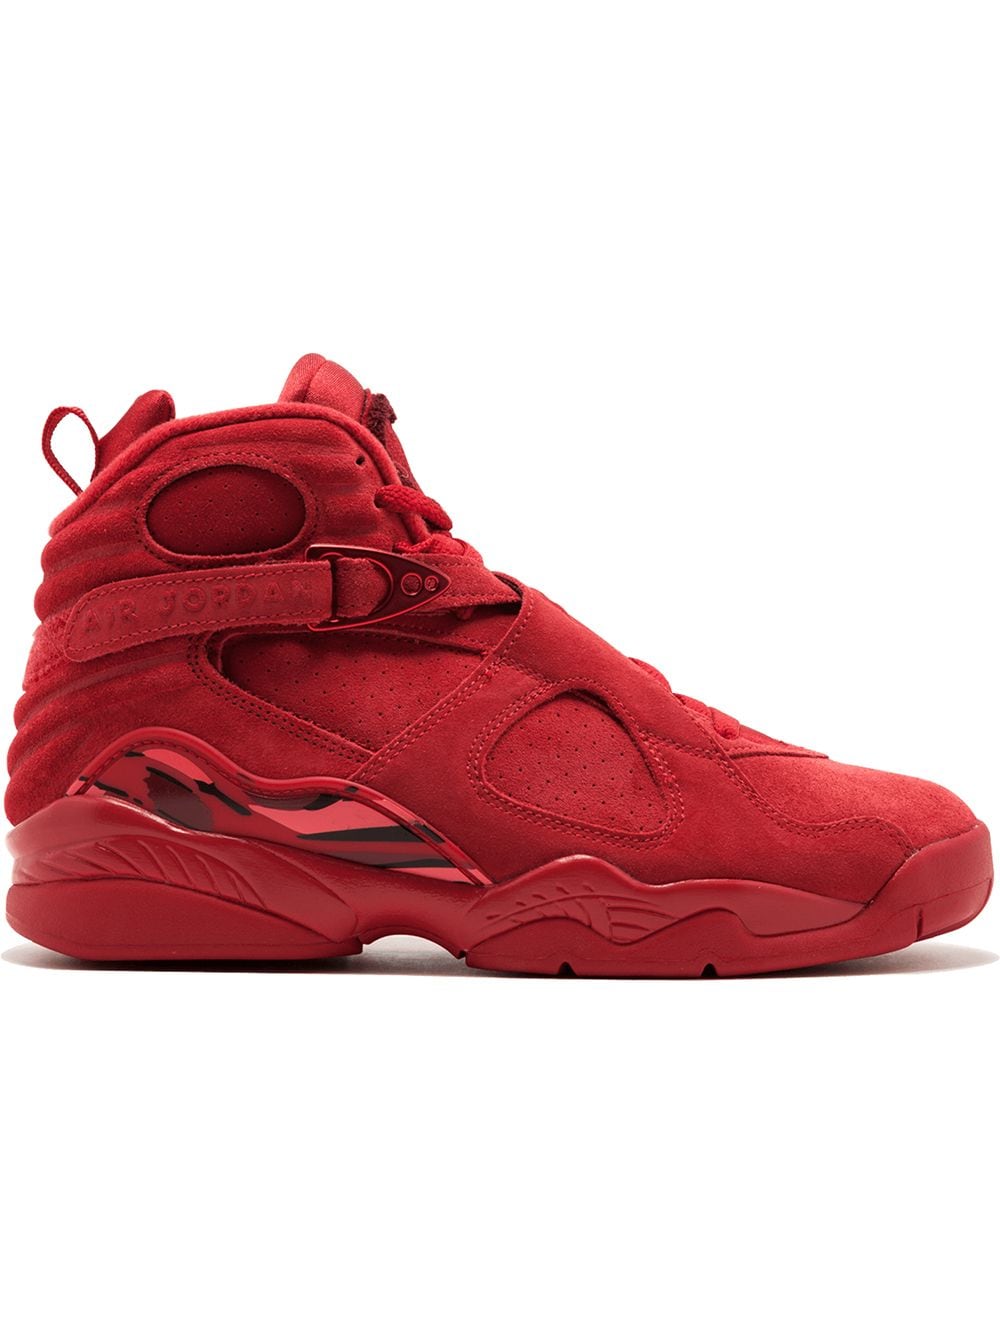 Jordan Air Jordan 8 Retro "Valentine's Day" sneakers - Red